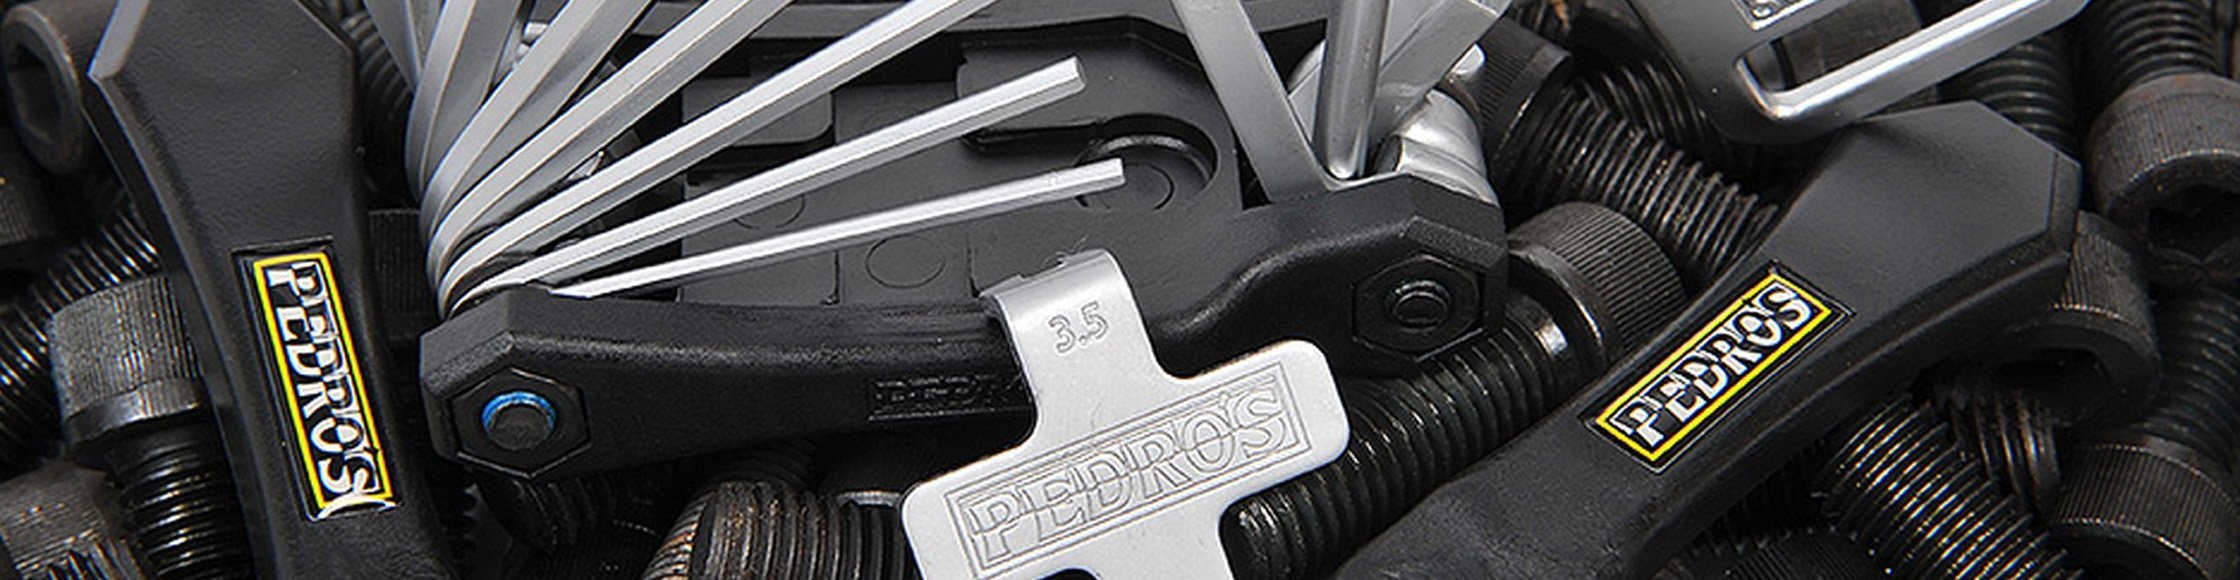 Pedros Fahrrad Werkzeuge